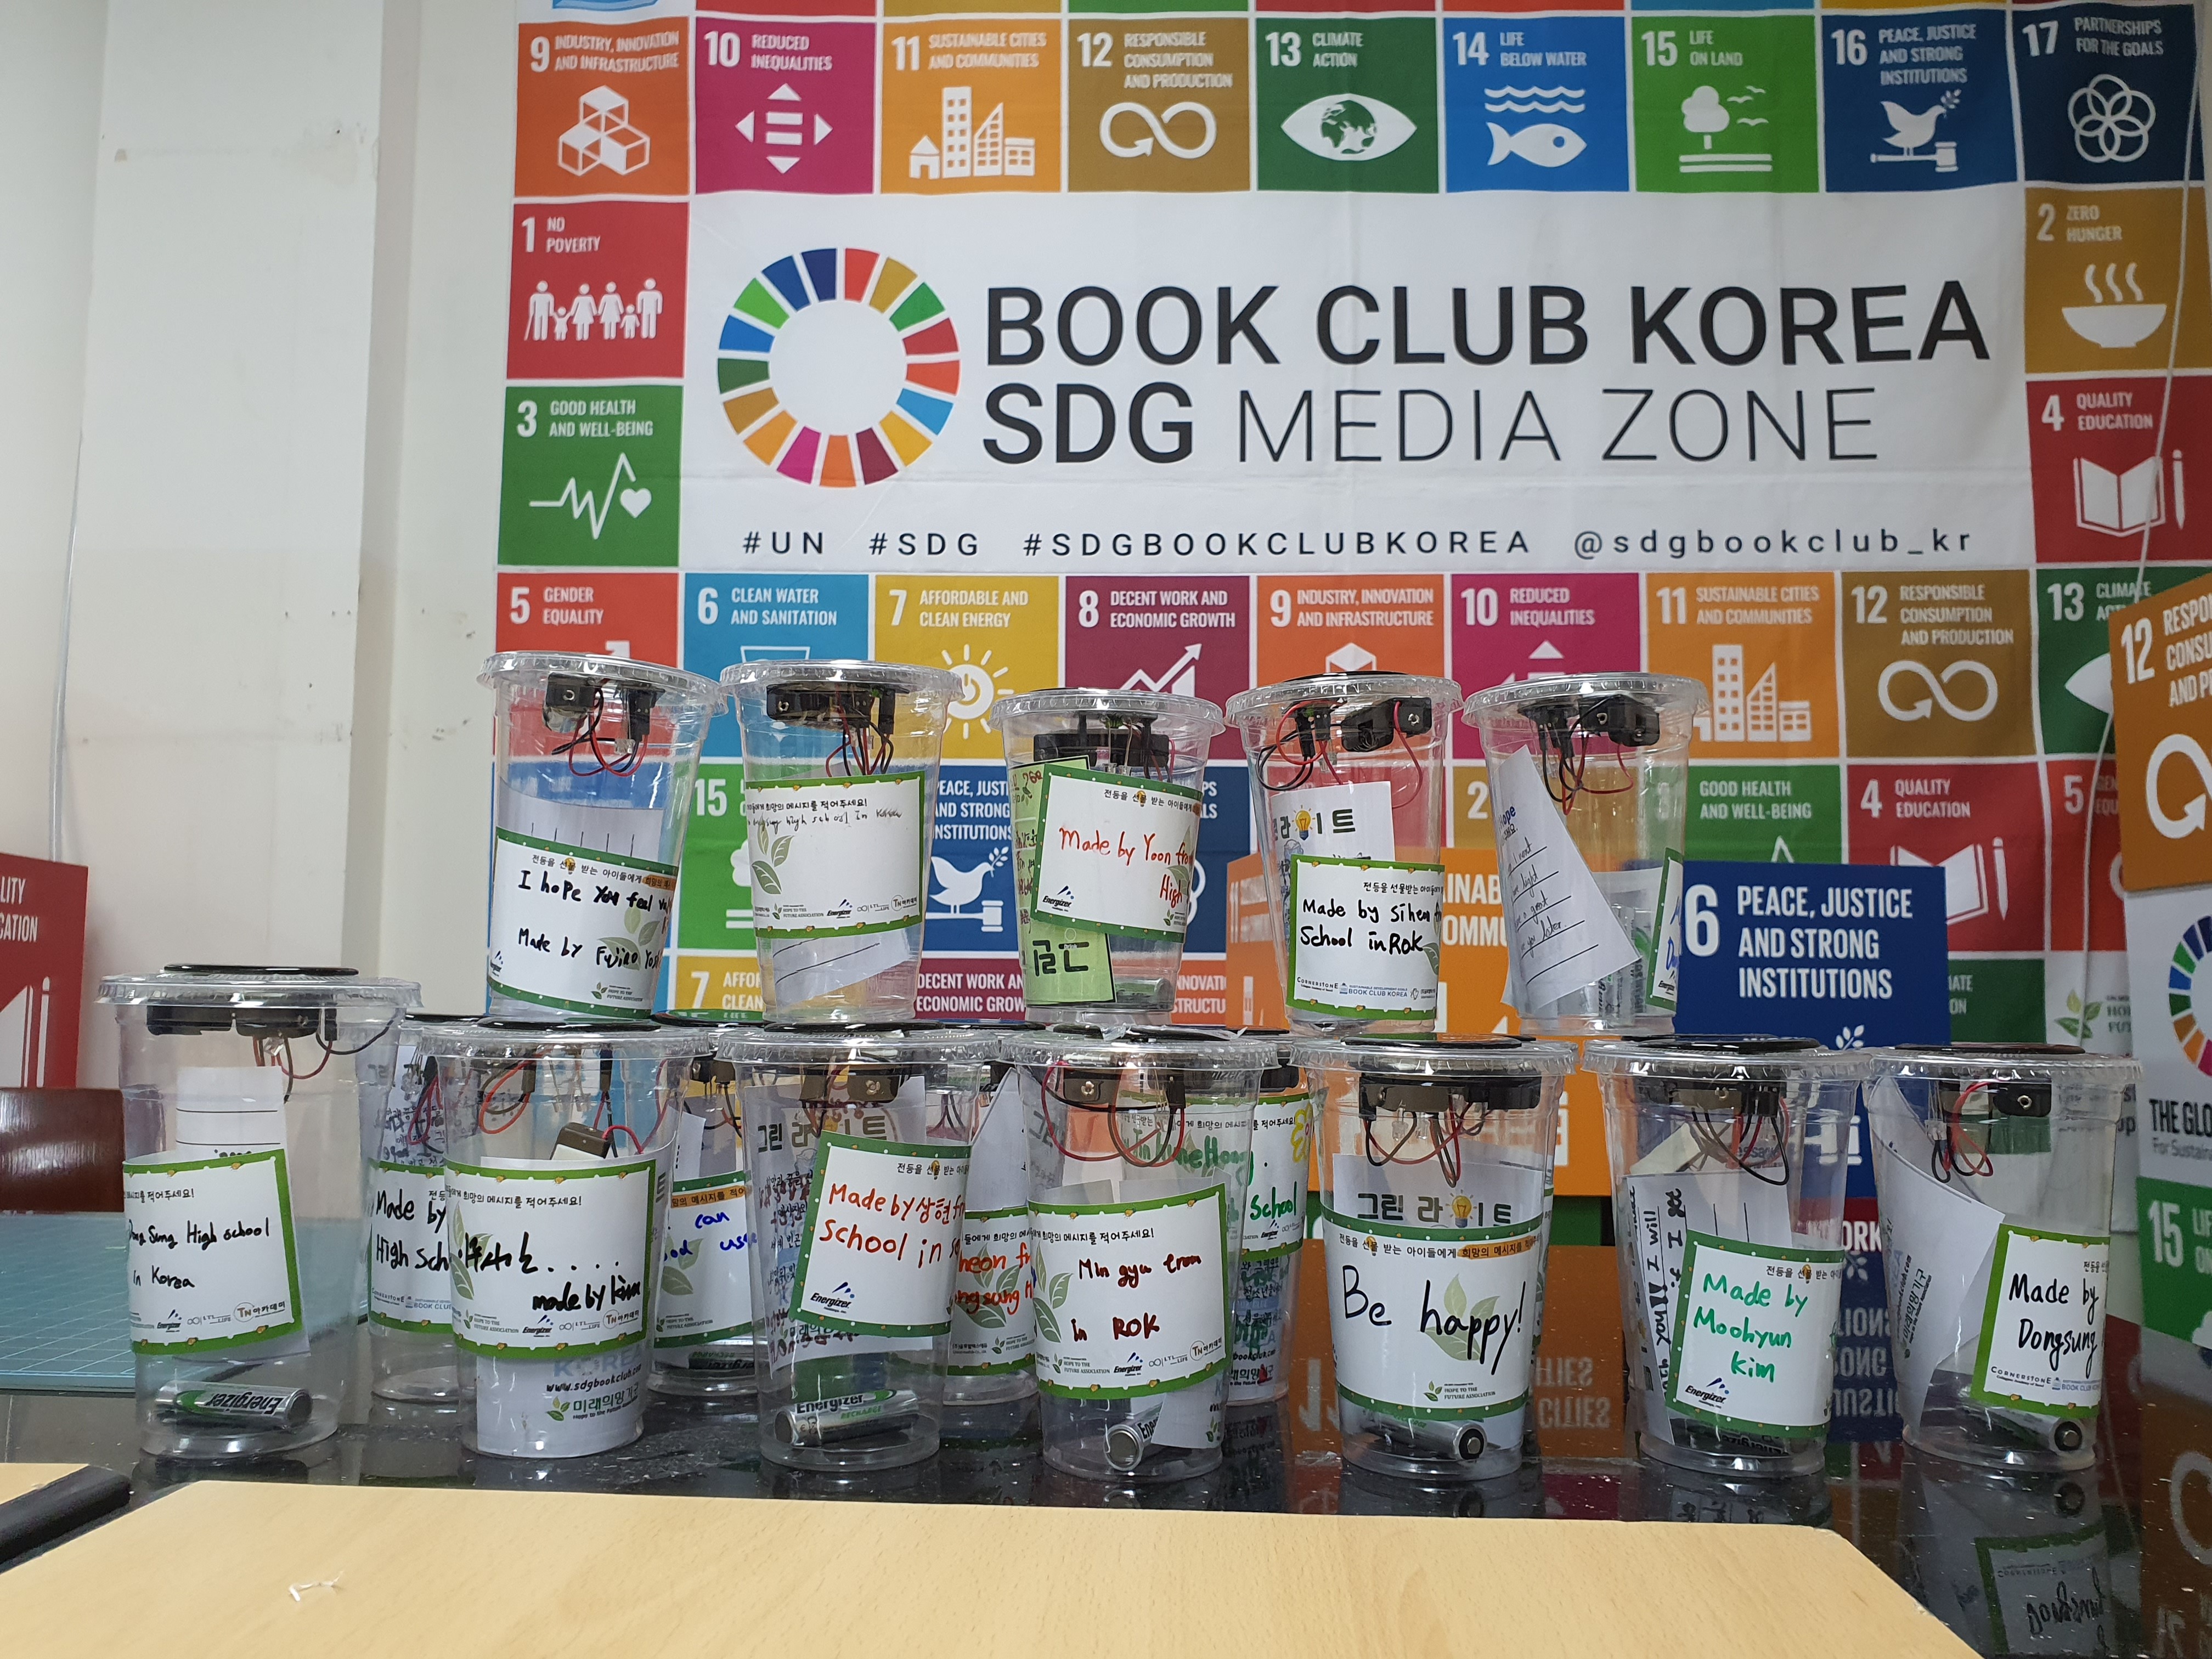 대원국제중학교 그린라이트 만들기 봉사활동 : Hfa 자원봉사